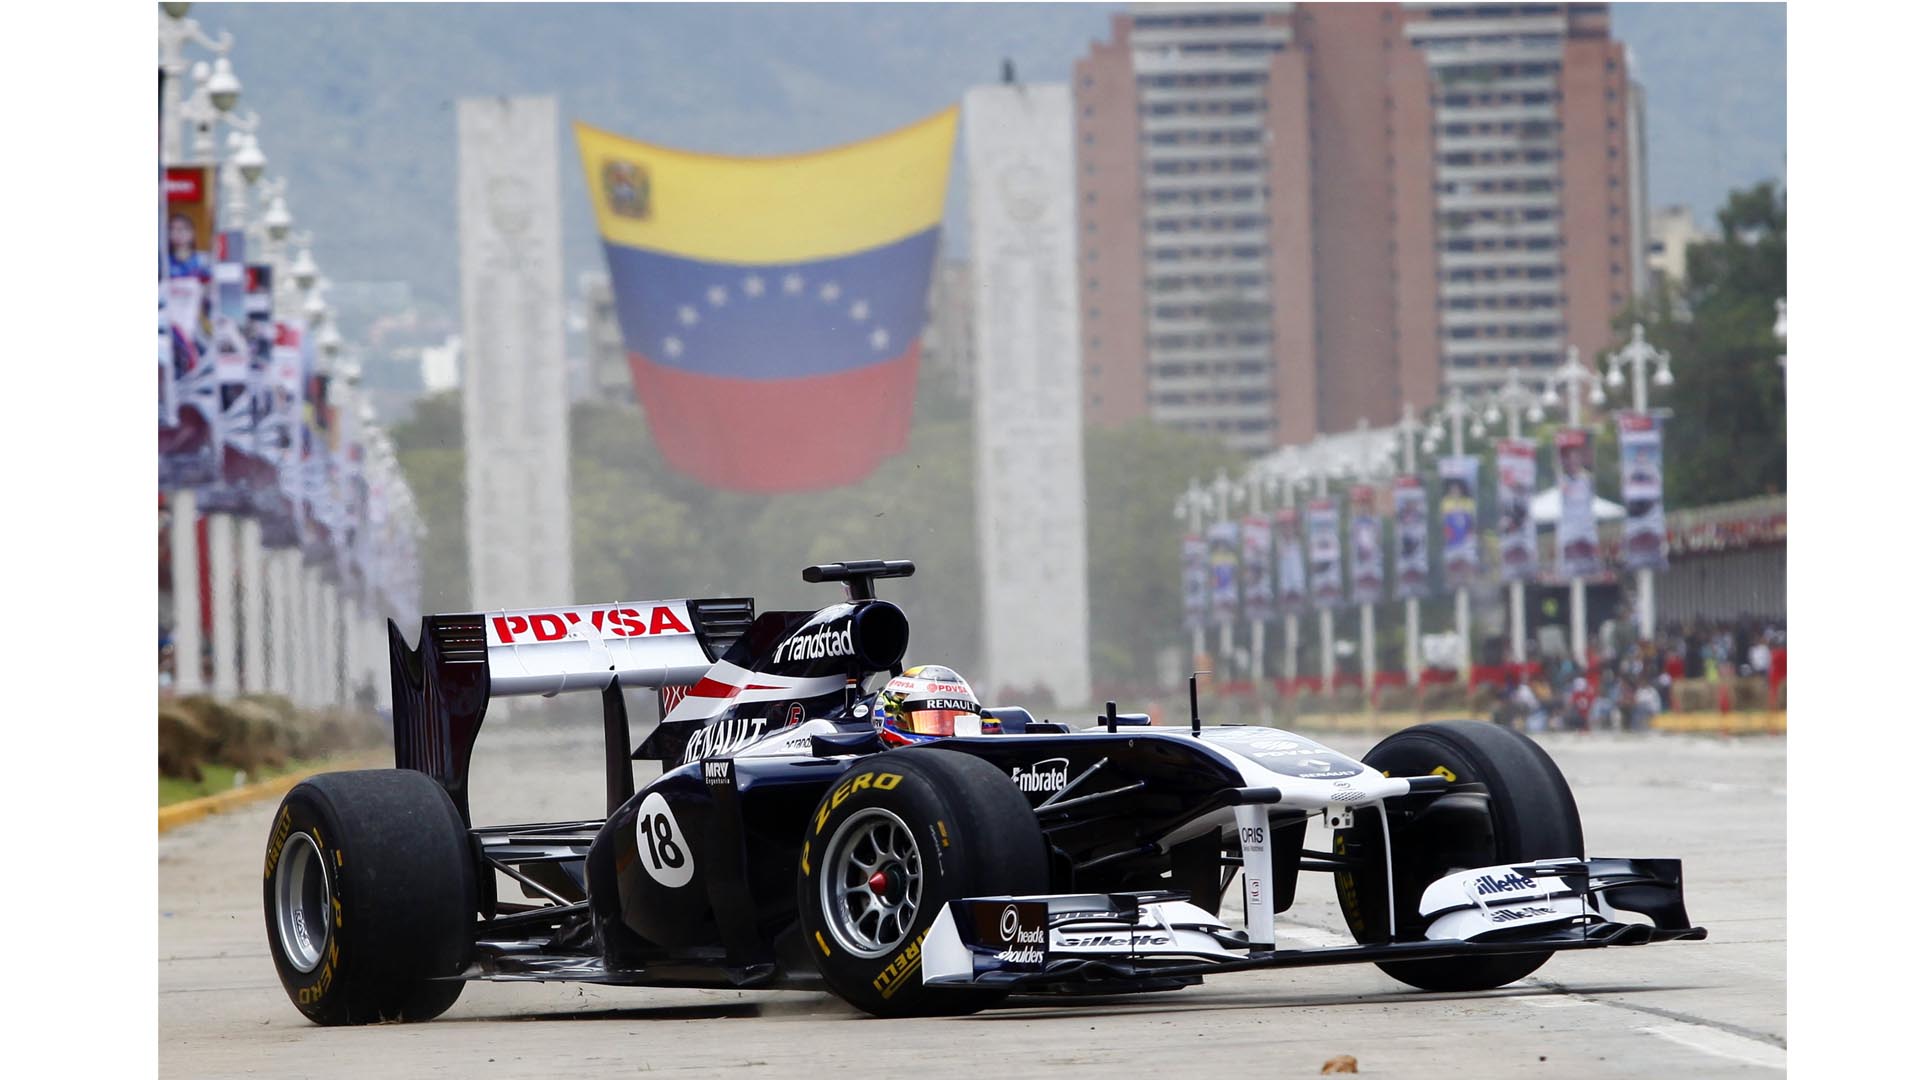 El piloto venezolano, está estaba fuera de las pistas desde la temporada 2015, cuando perdió su puesto en la escudería Lotus Team